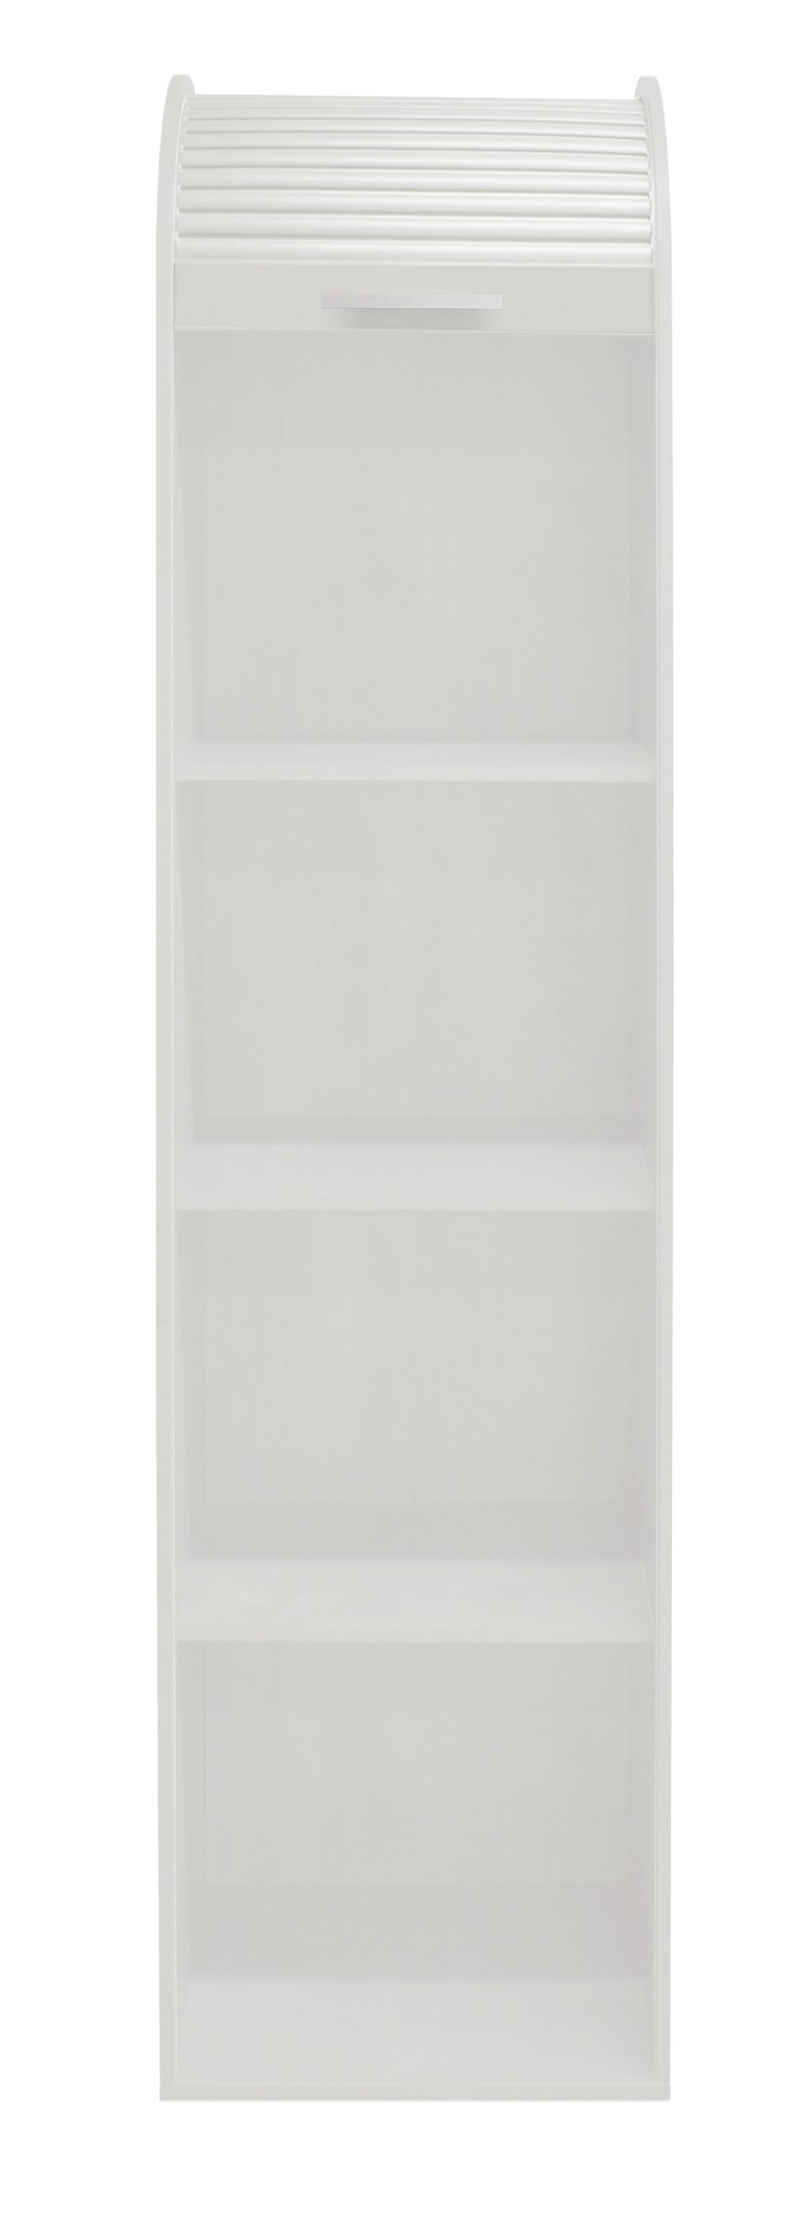 möbelando Jalousieschrank Jalousieschrank (BxHxT: 46x192x44 cm) in weiß matt lack / weiß mit 2 Einlegeböden